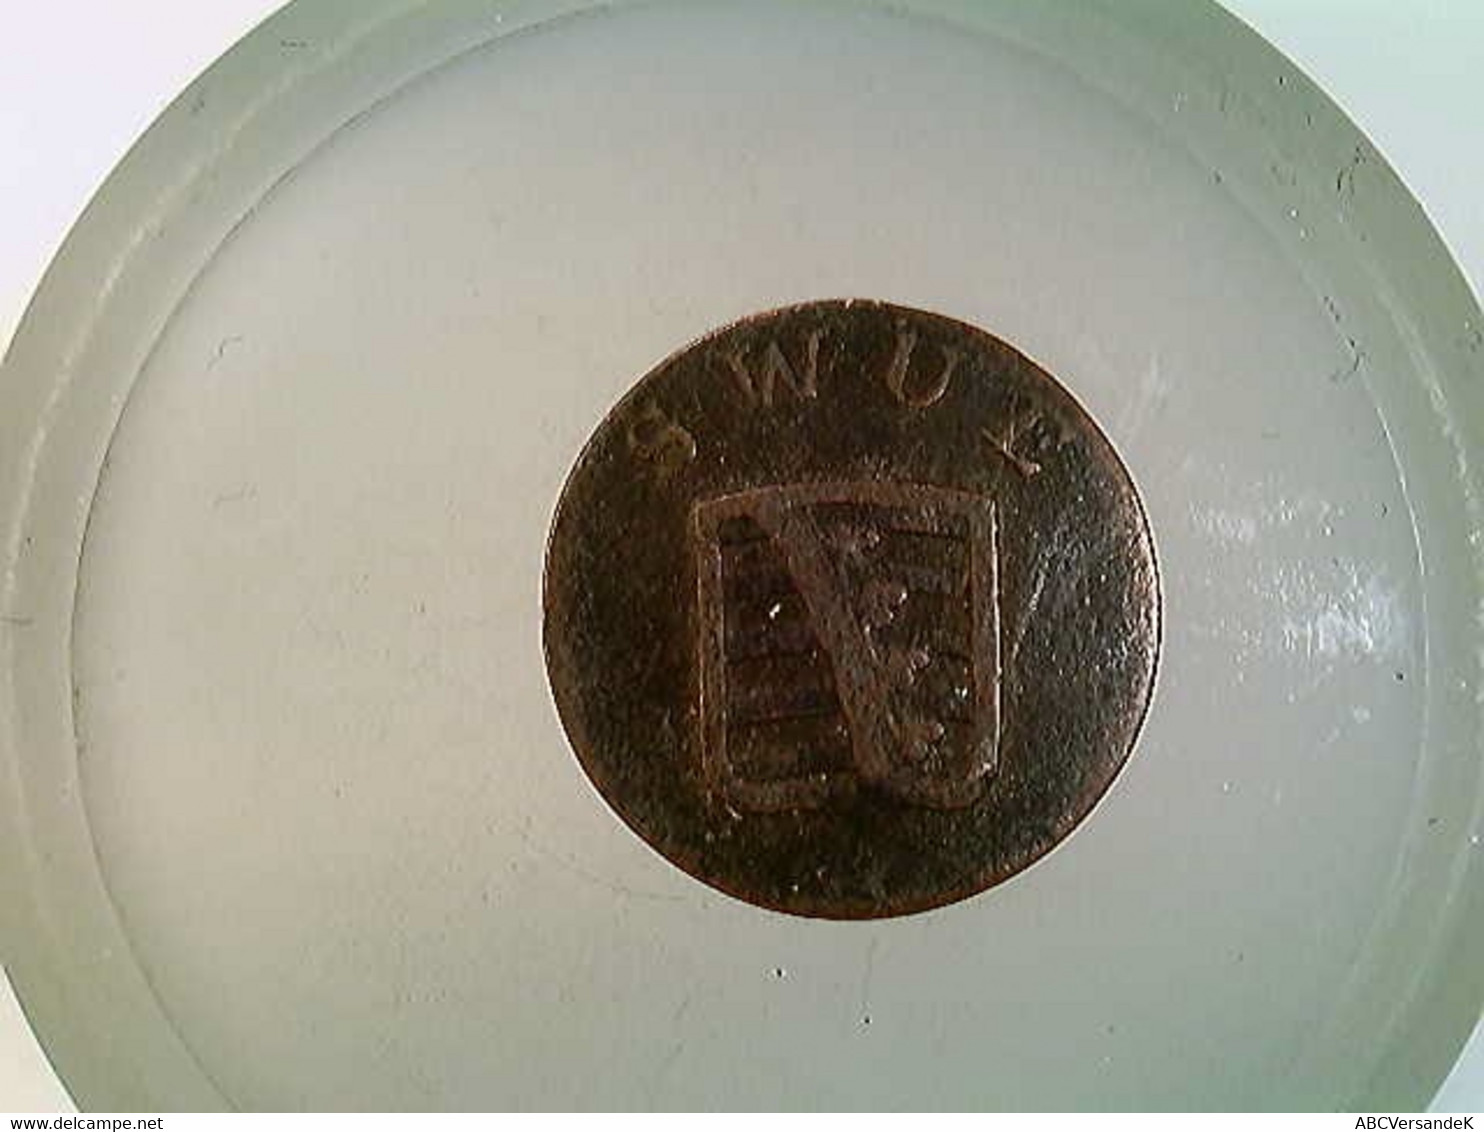 Münze, 1 Pfennig, 1792, Sachsen-Weimar-Eisenach, SWUE, Karl August I. - Numismatics